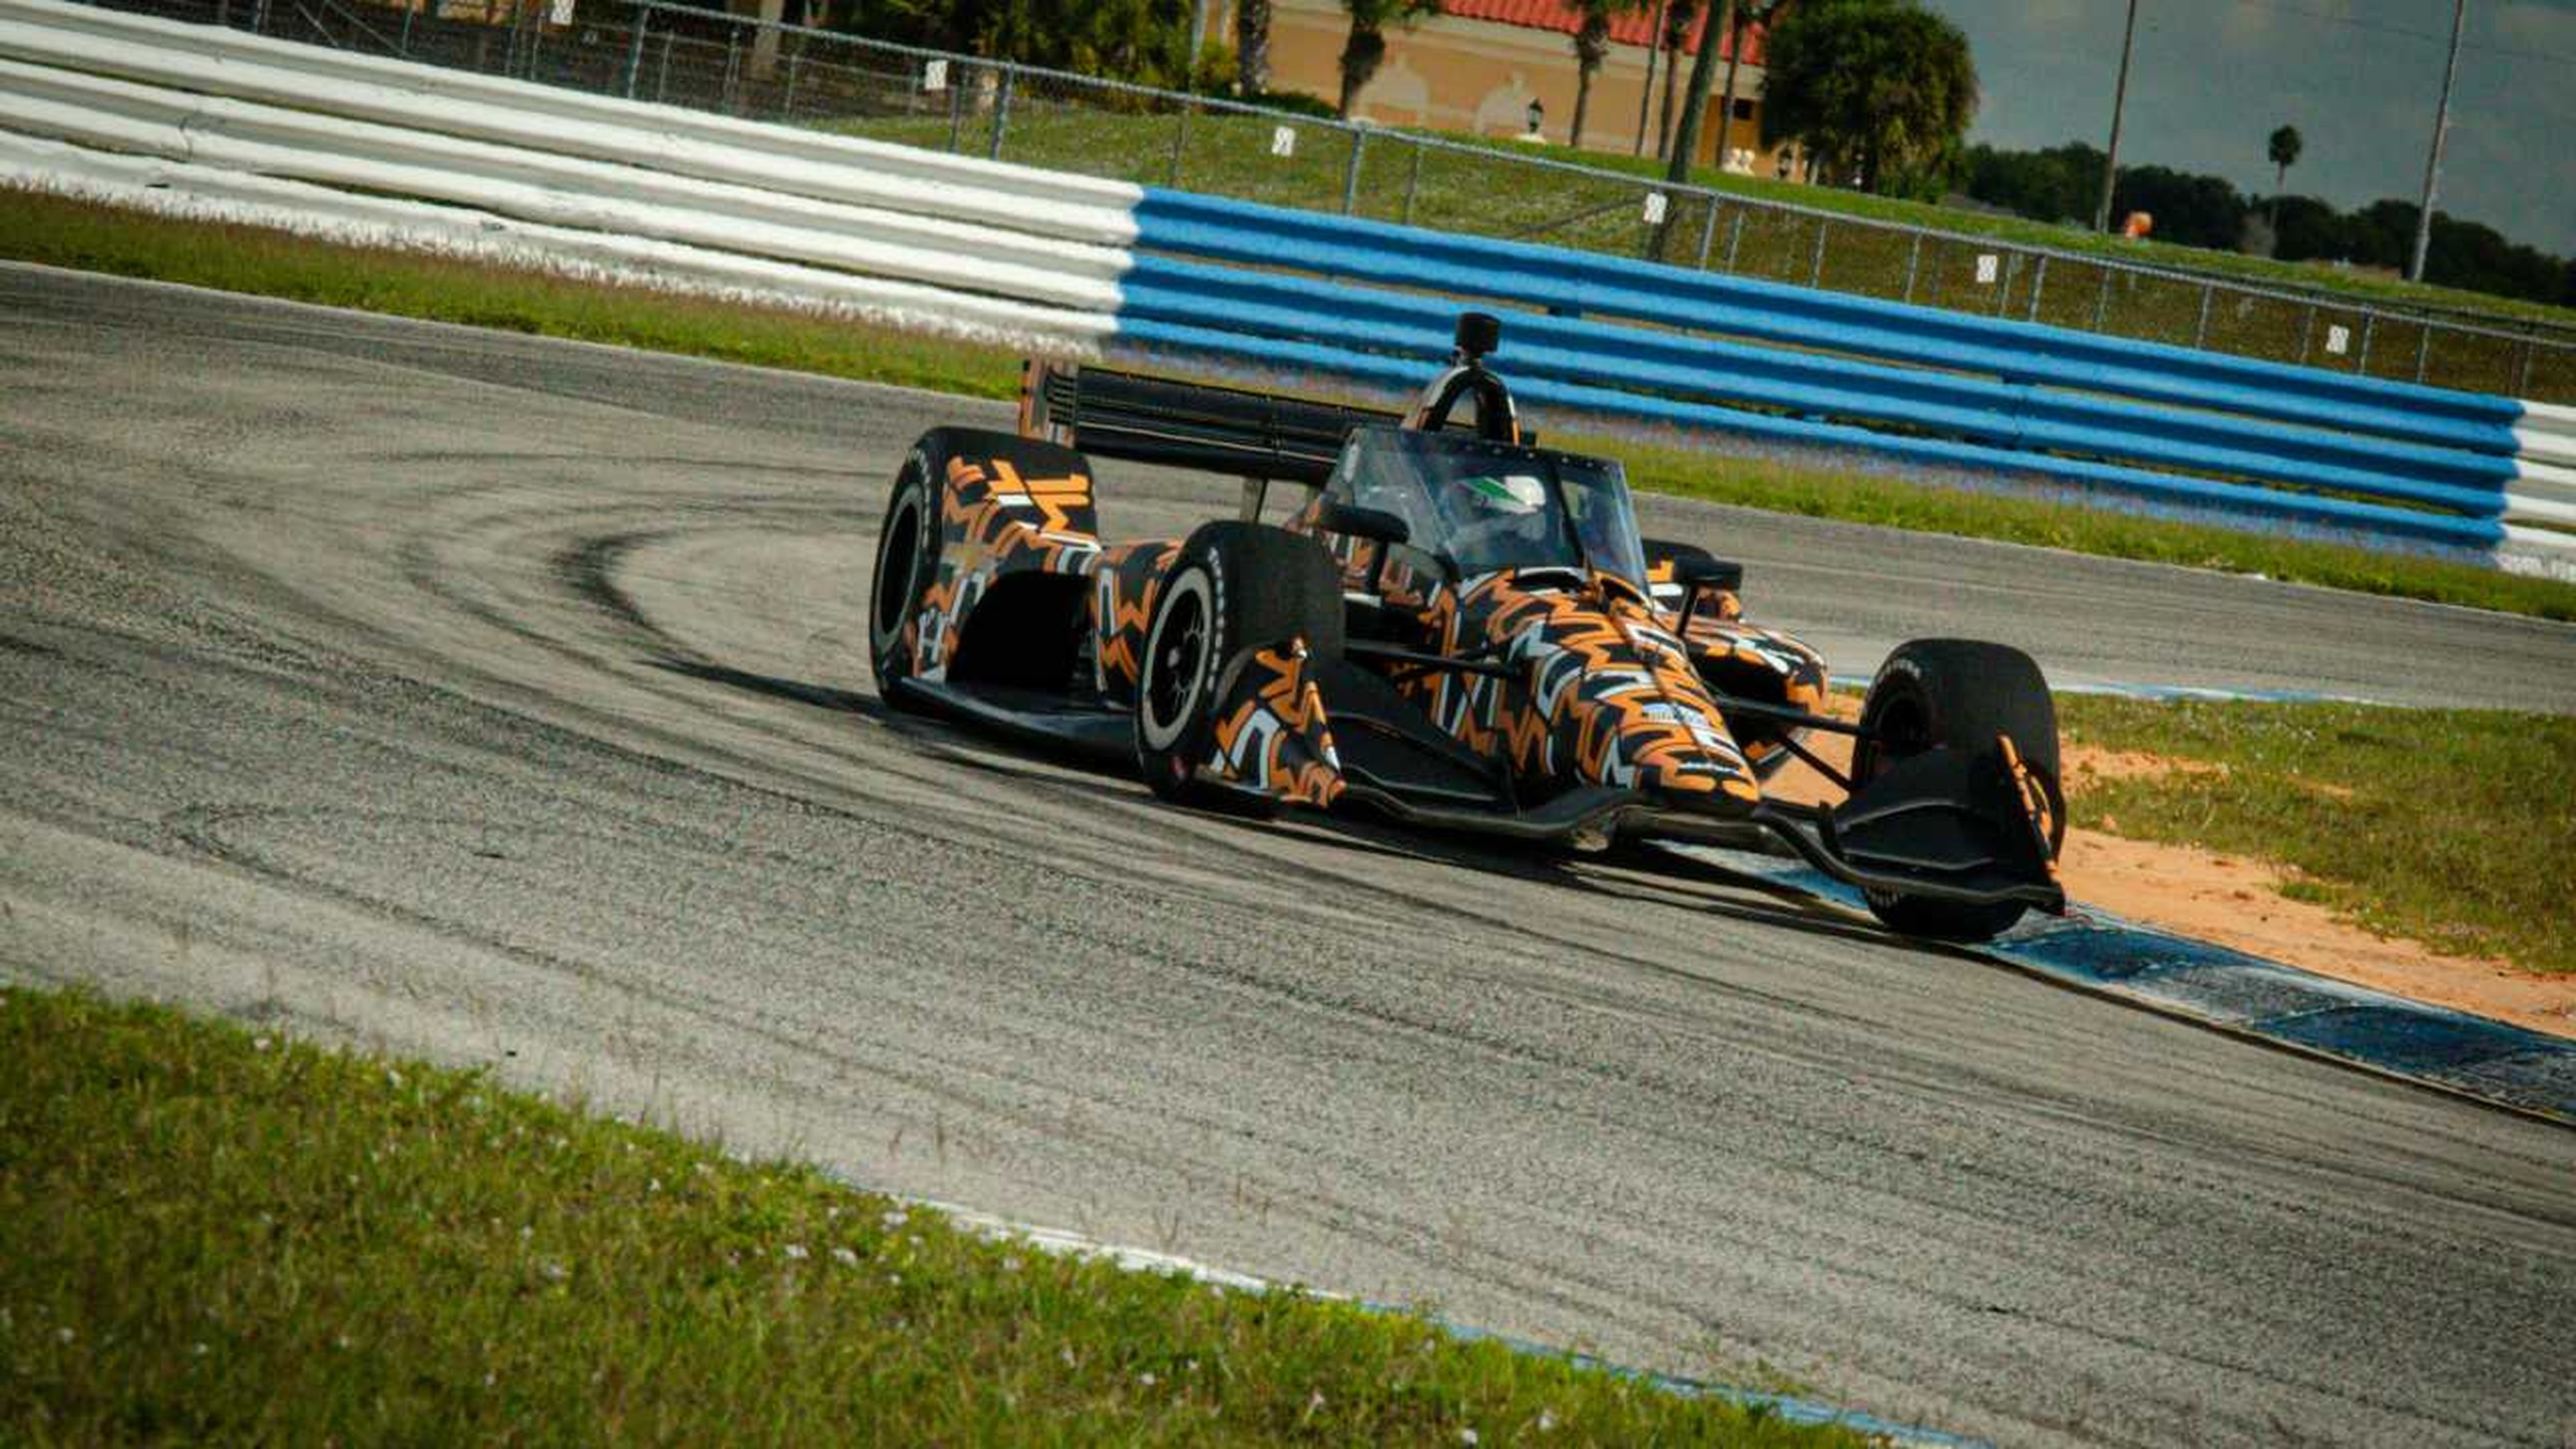 McLaren Indycar